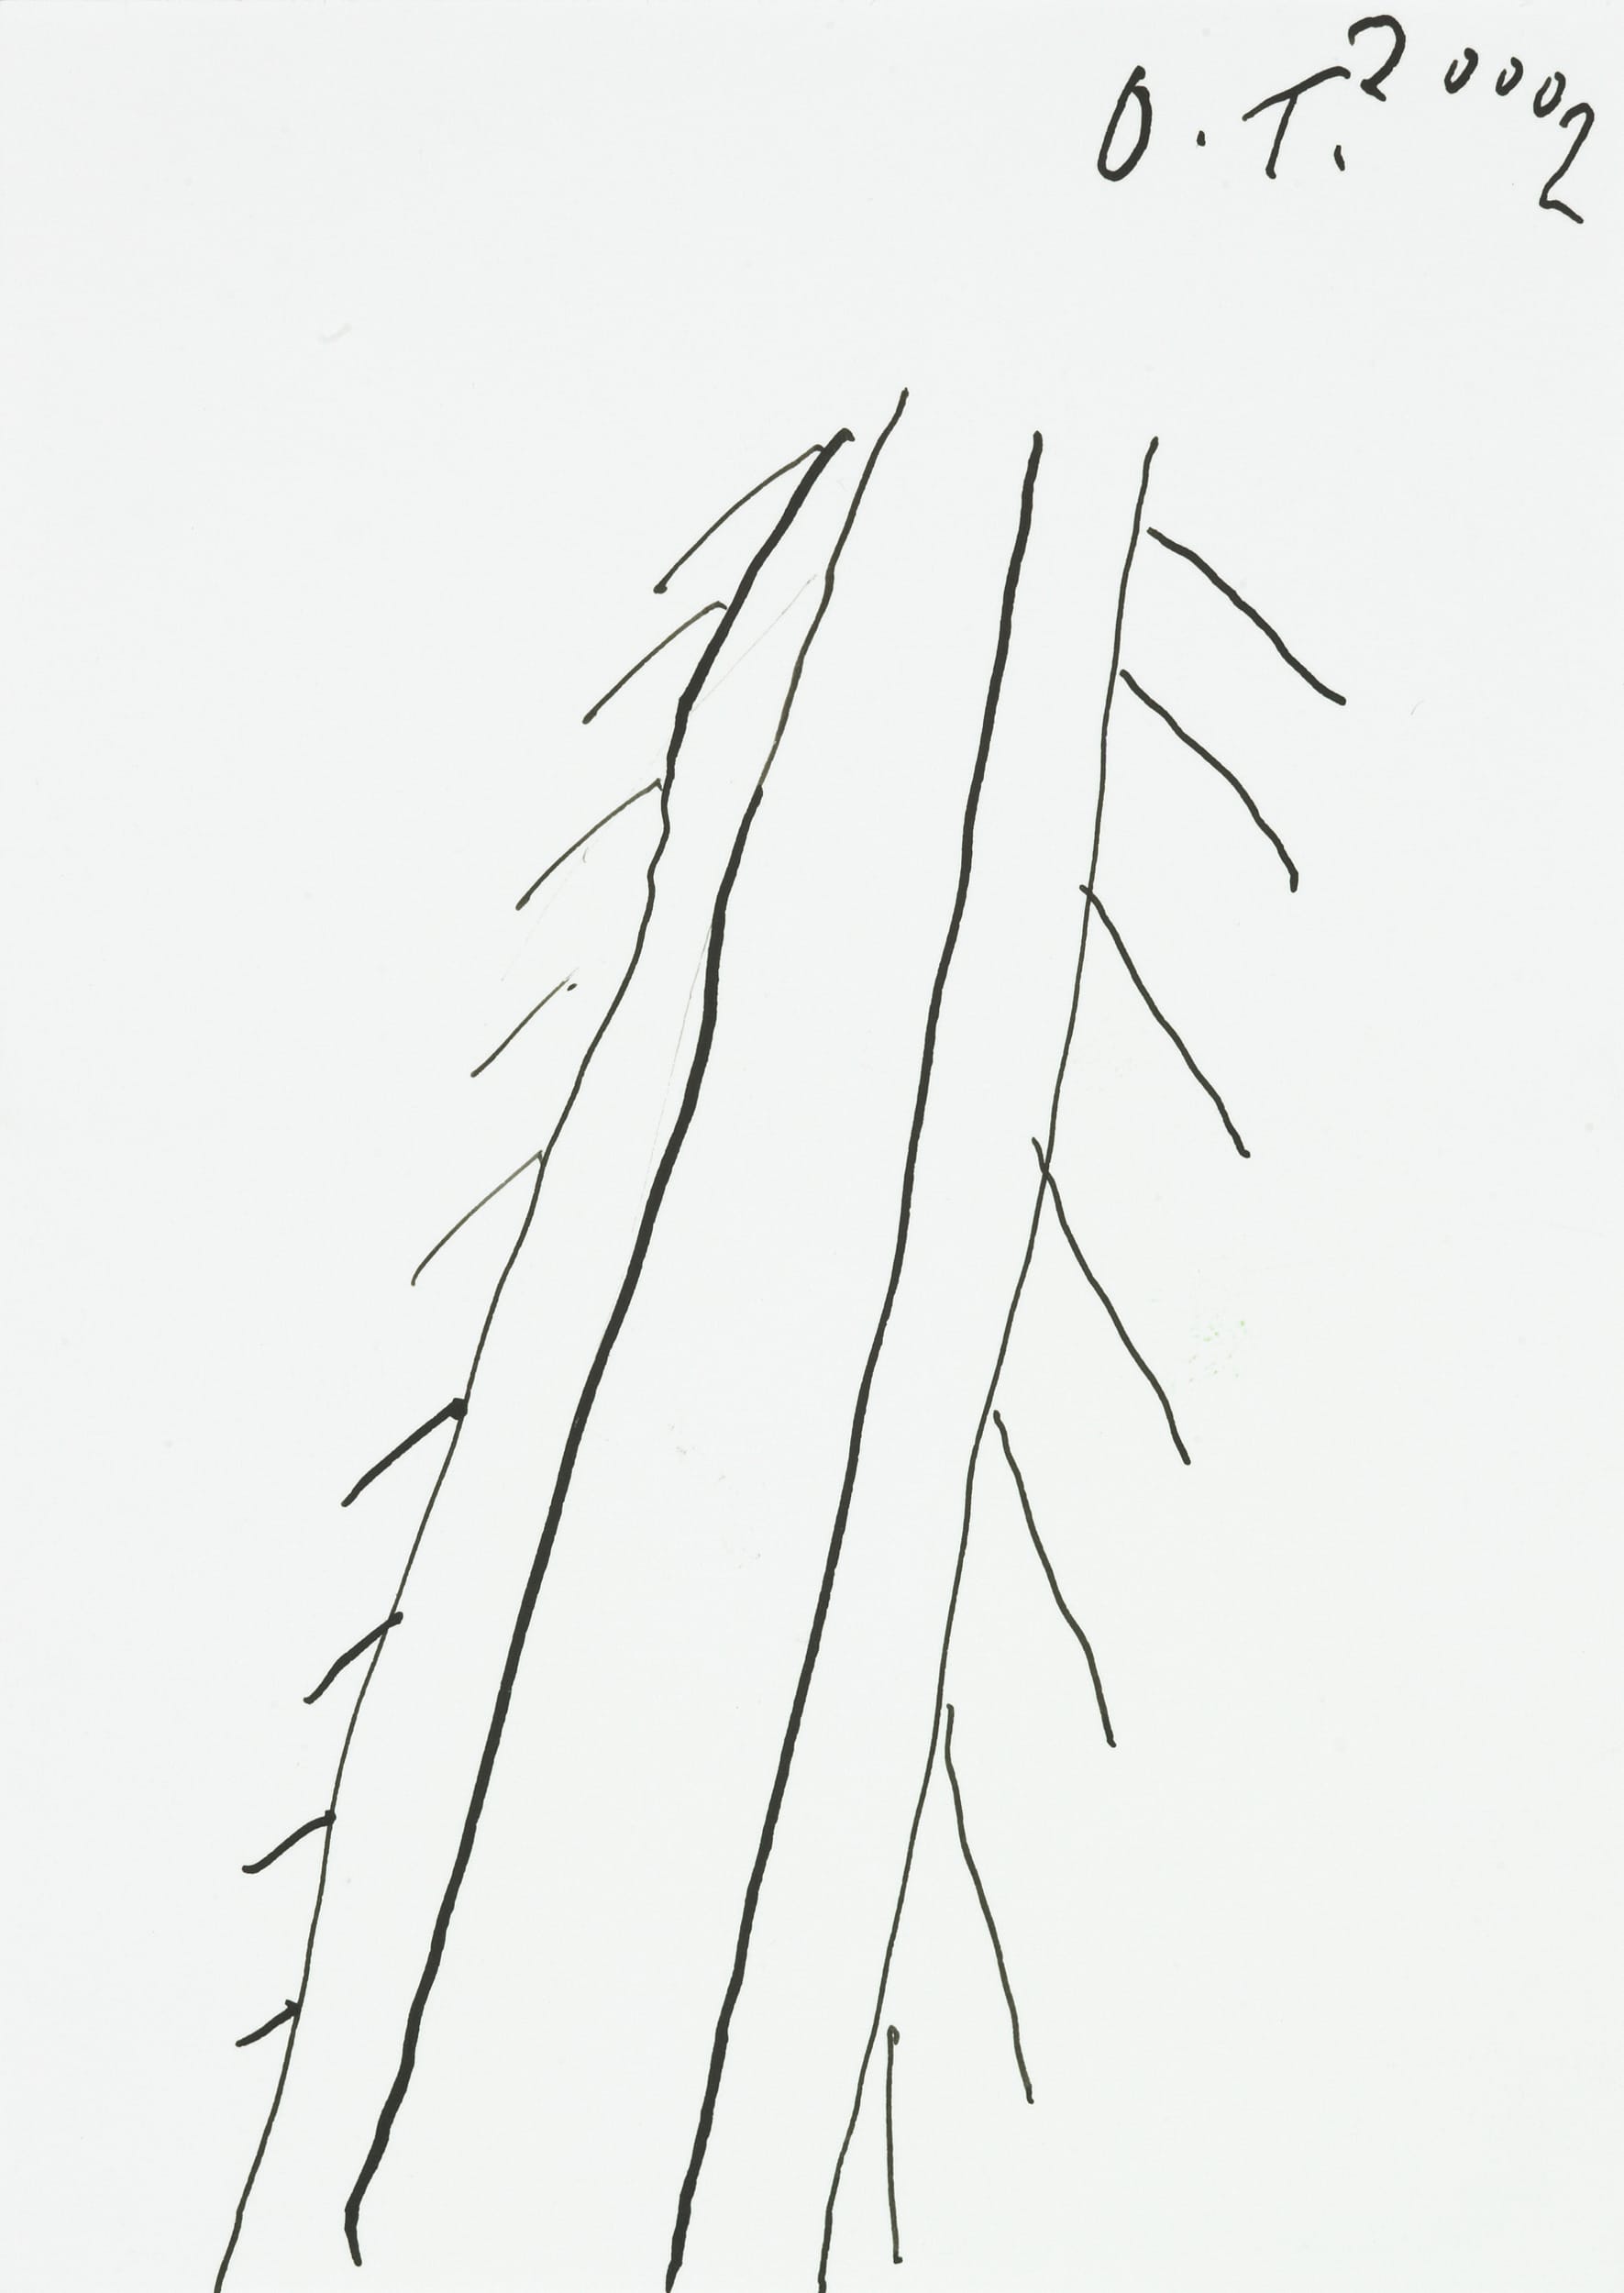 tschirtner oswald - Tannenbaum / Fir tree